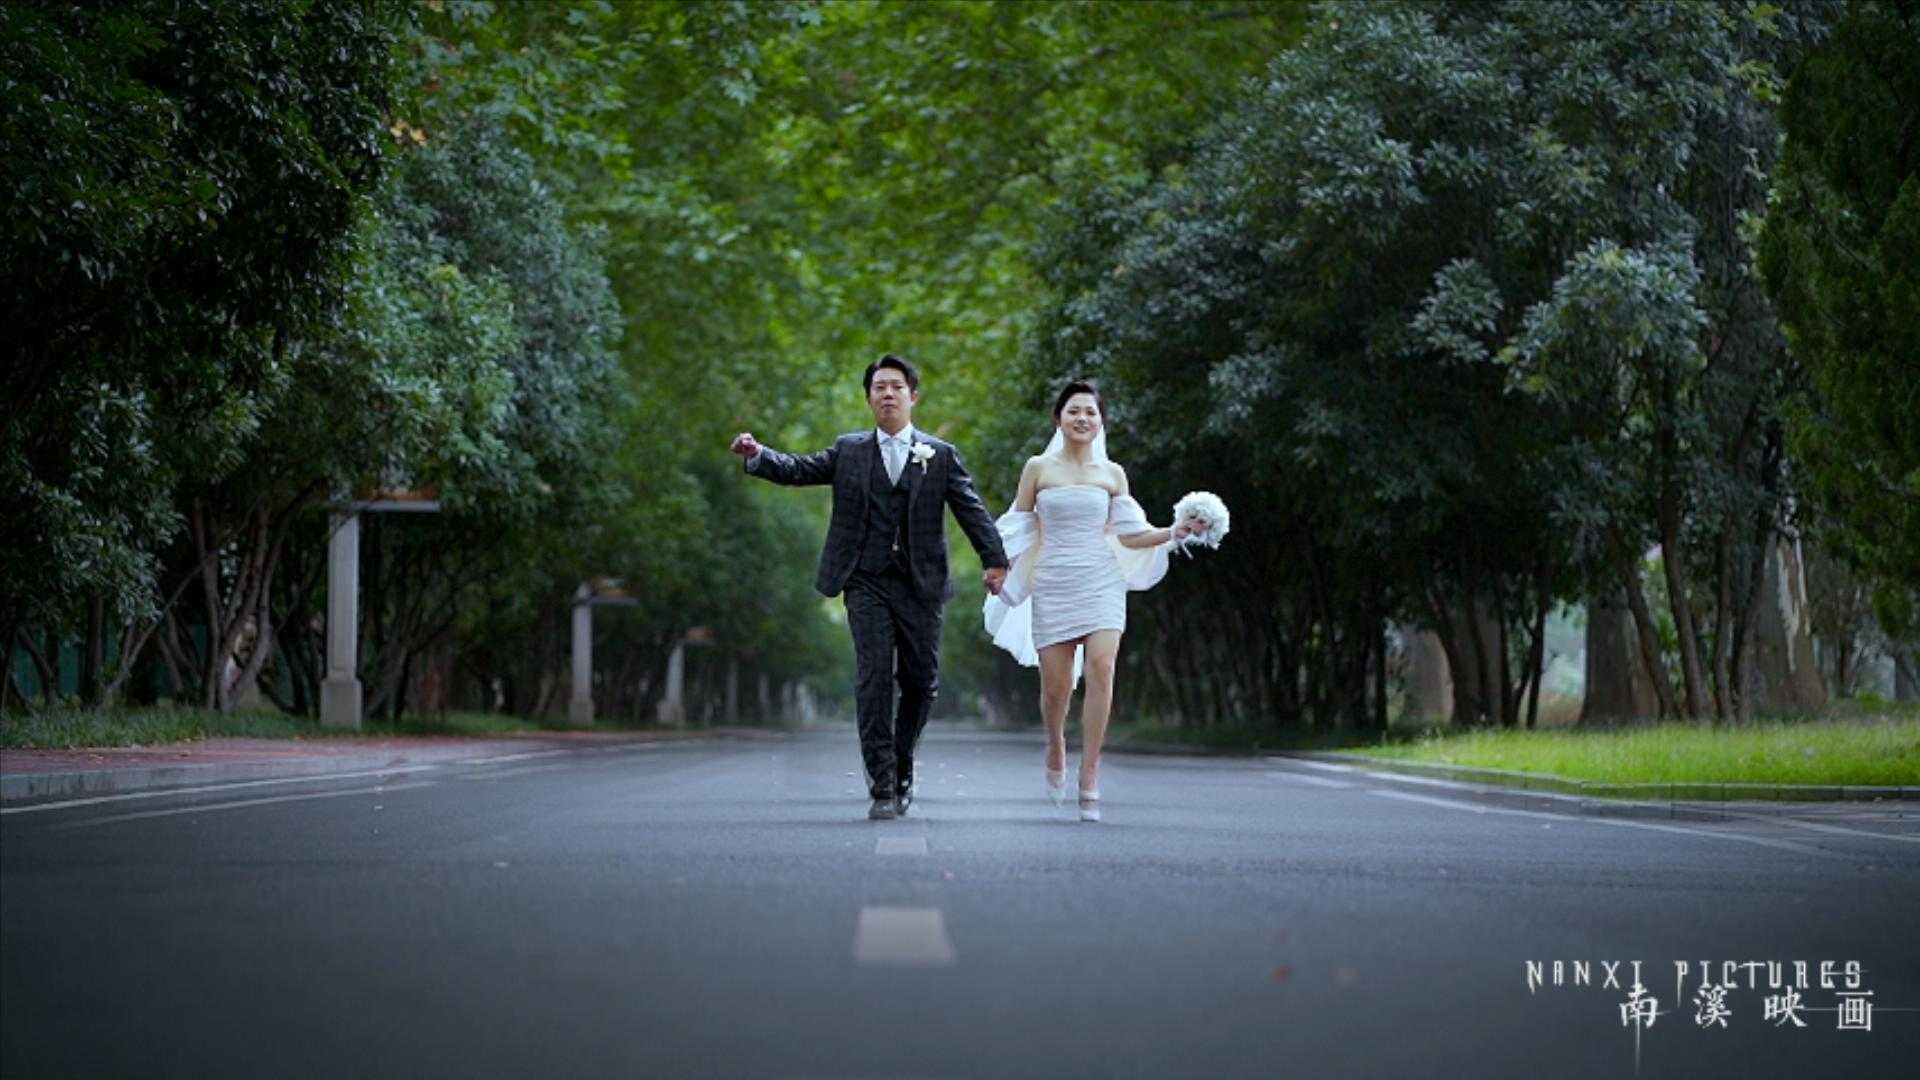 《永驻我心》丨婚礼电影丨南溪映画出品